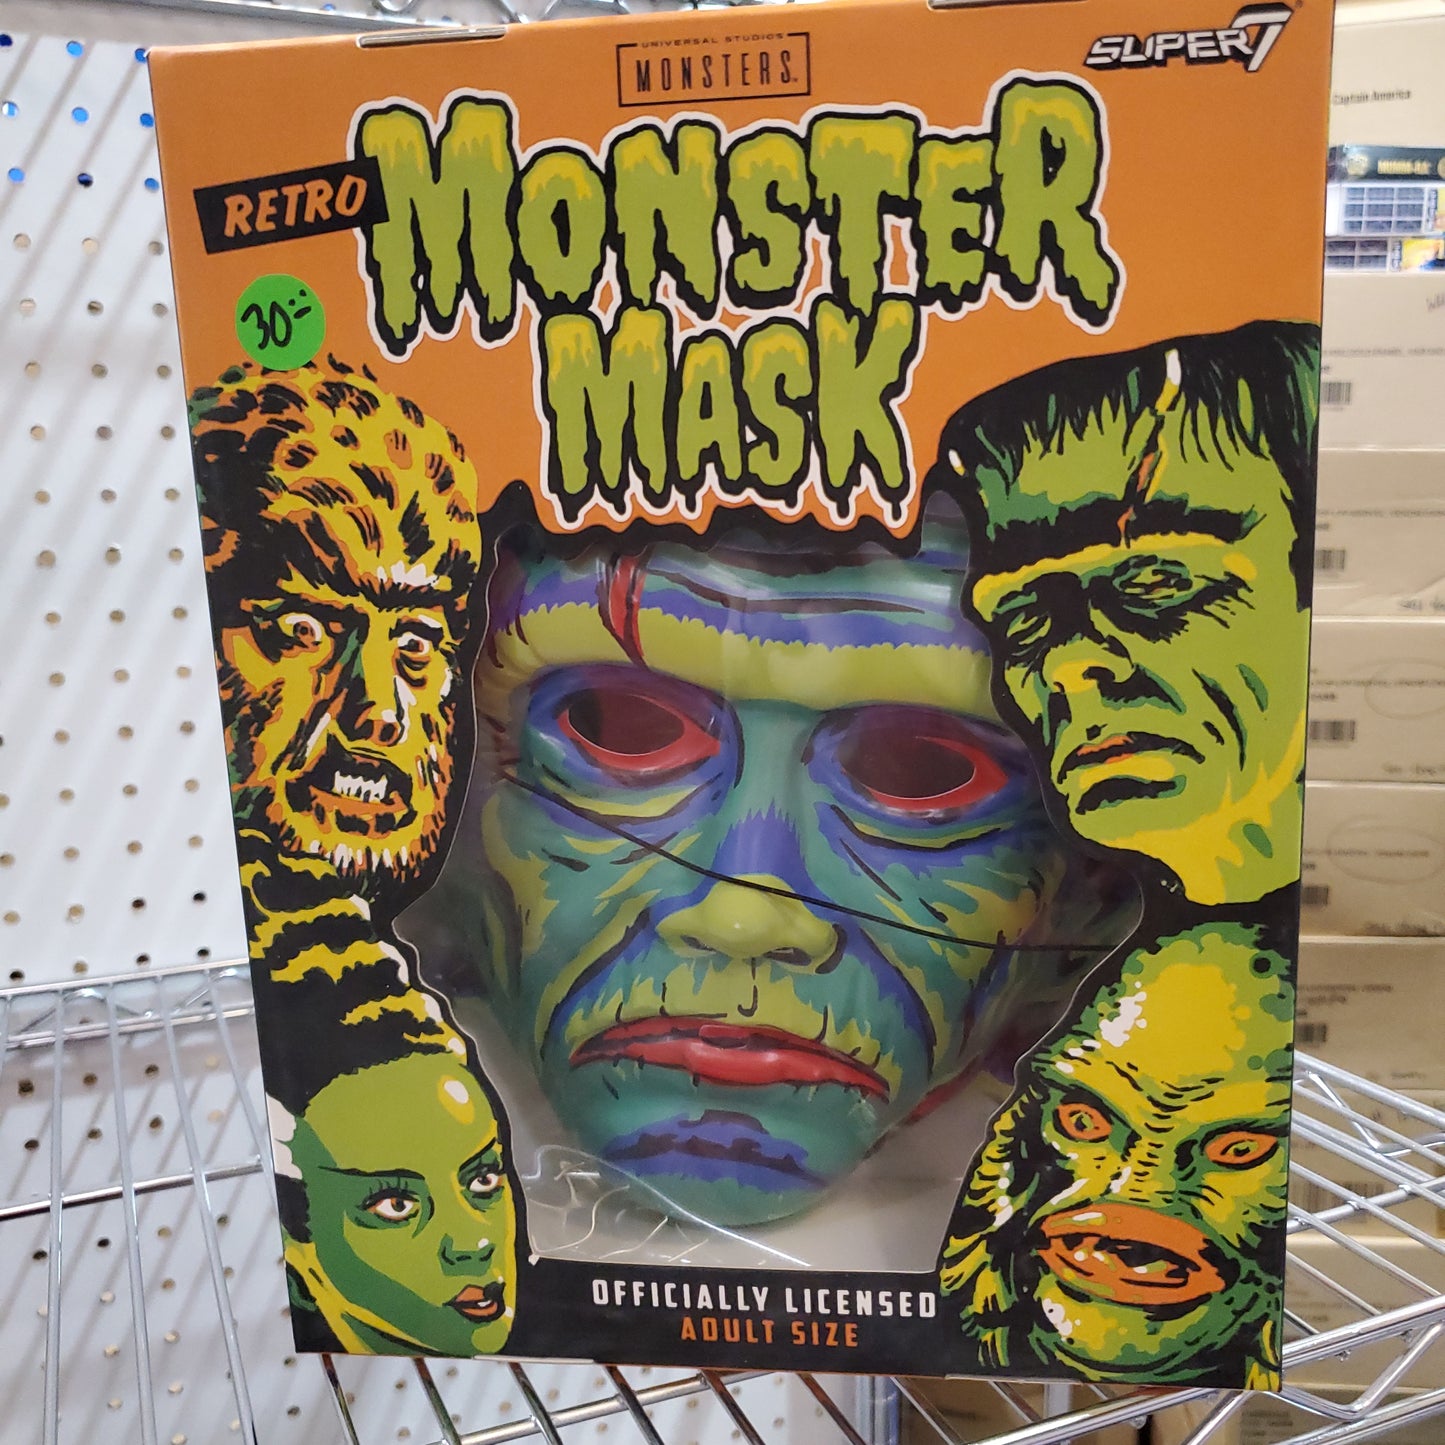 Super7 - Retro Monster Masks